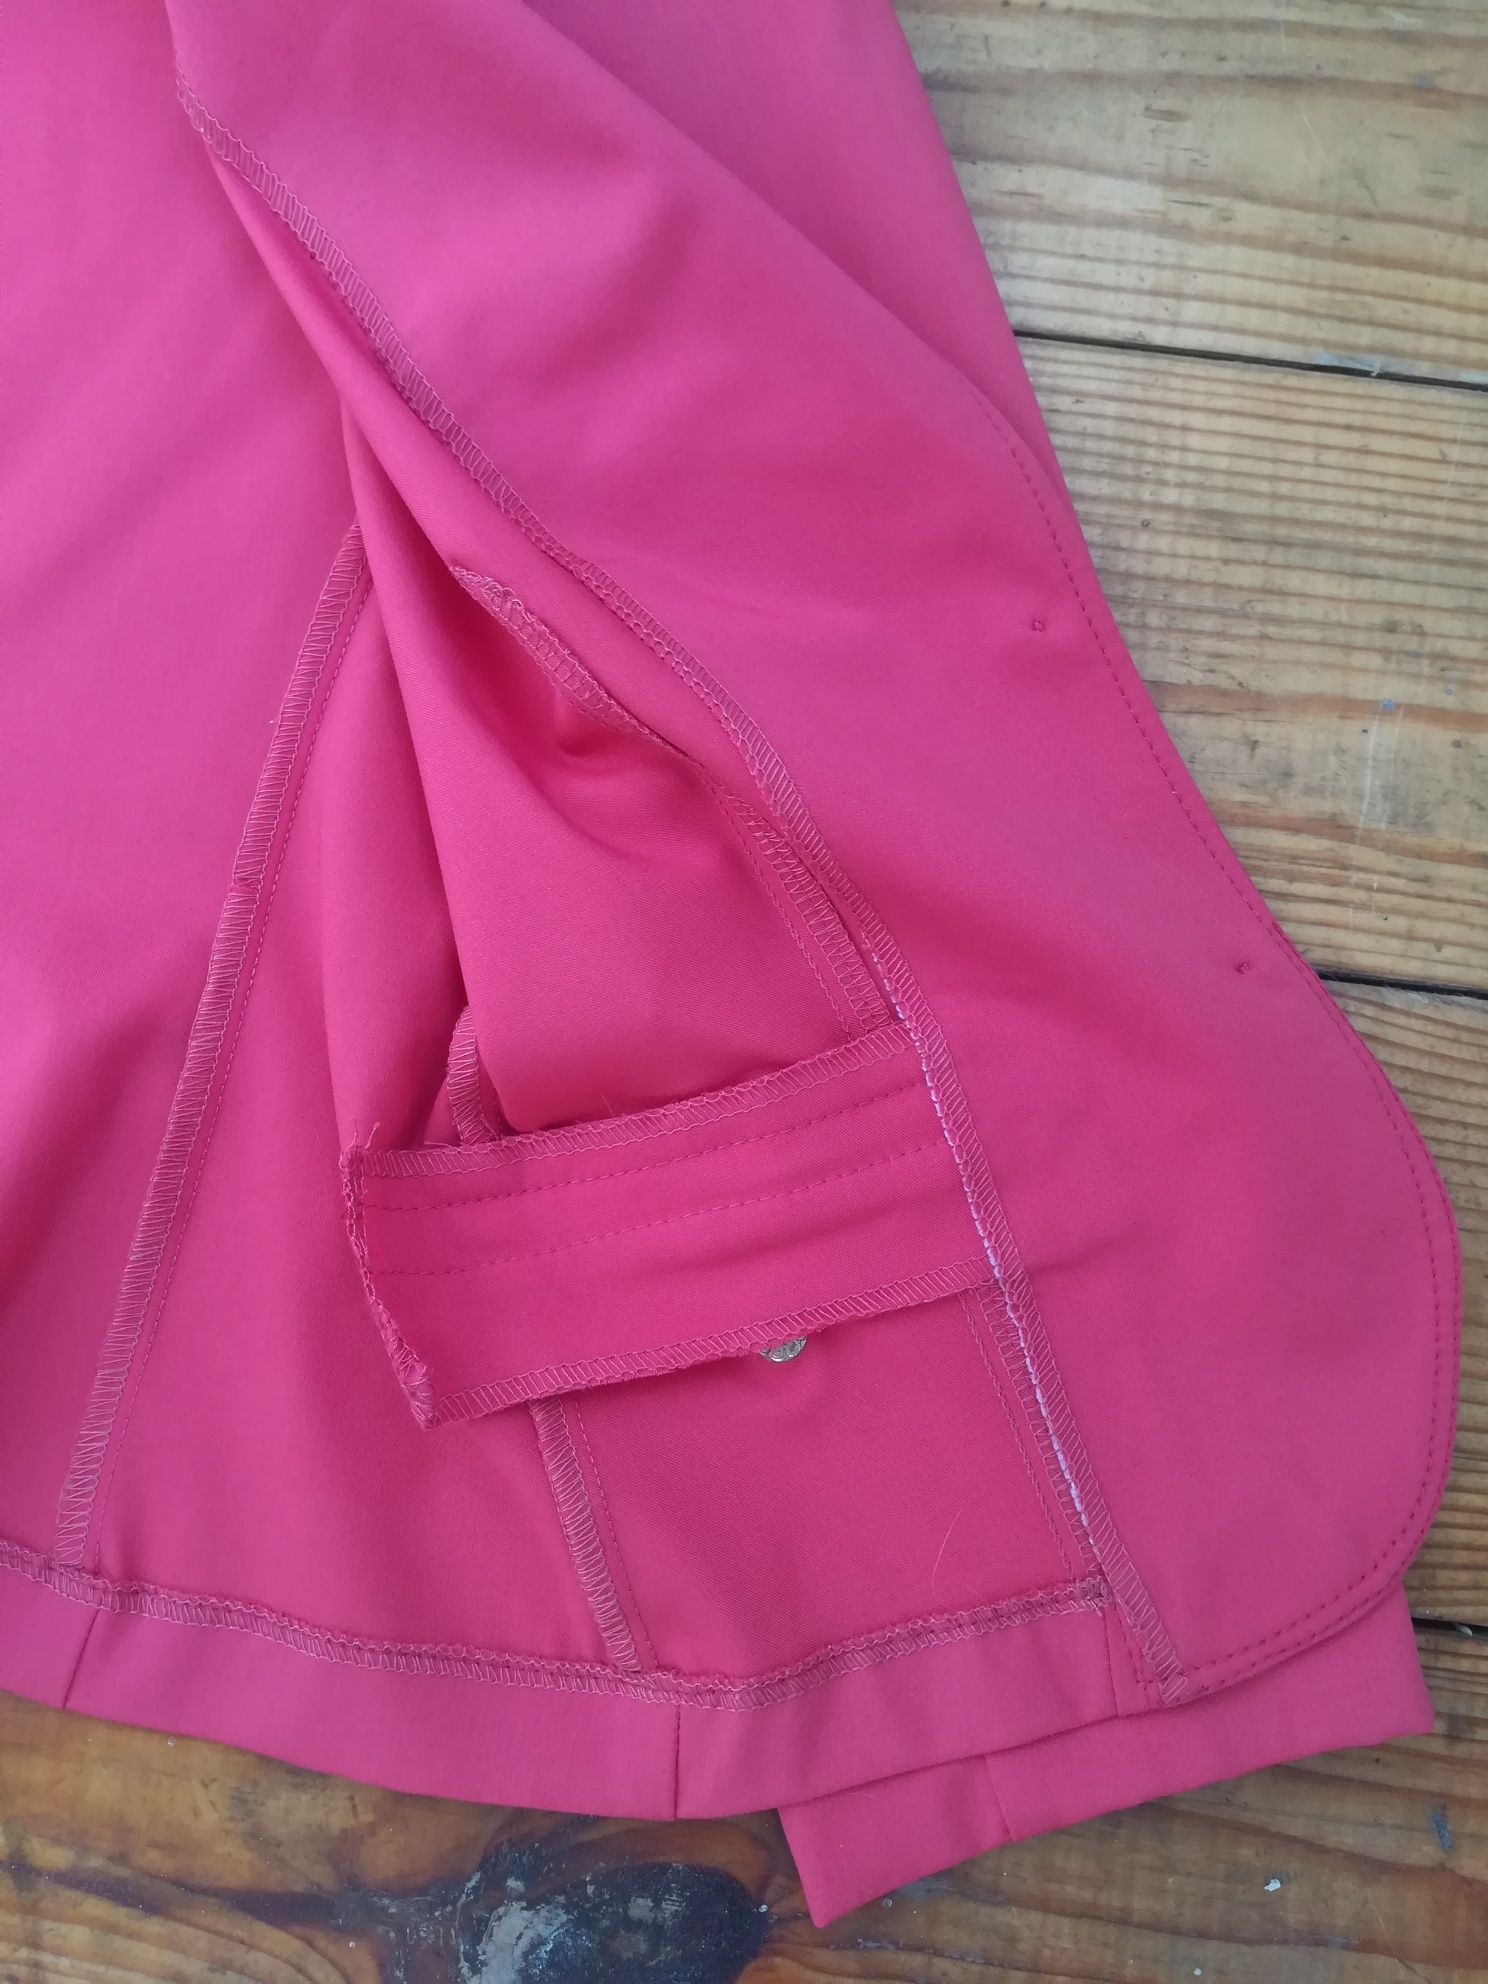 Пиджак женский, розовый пиджак